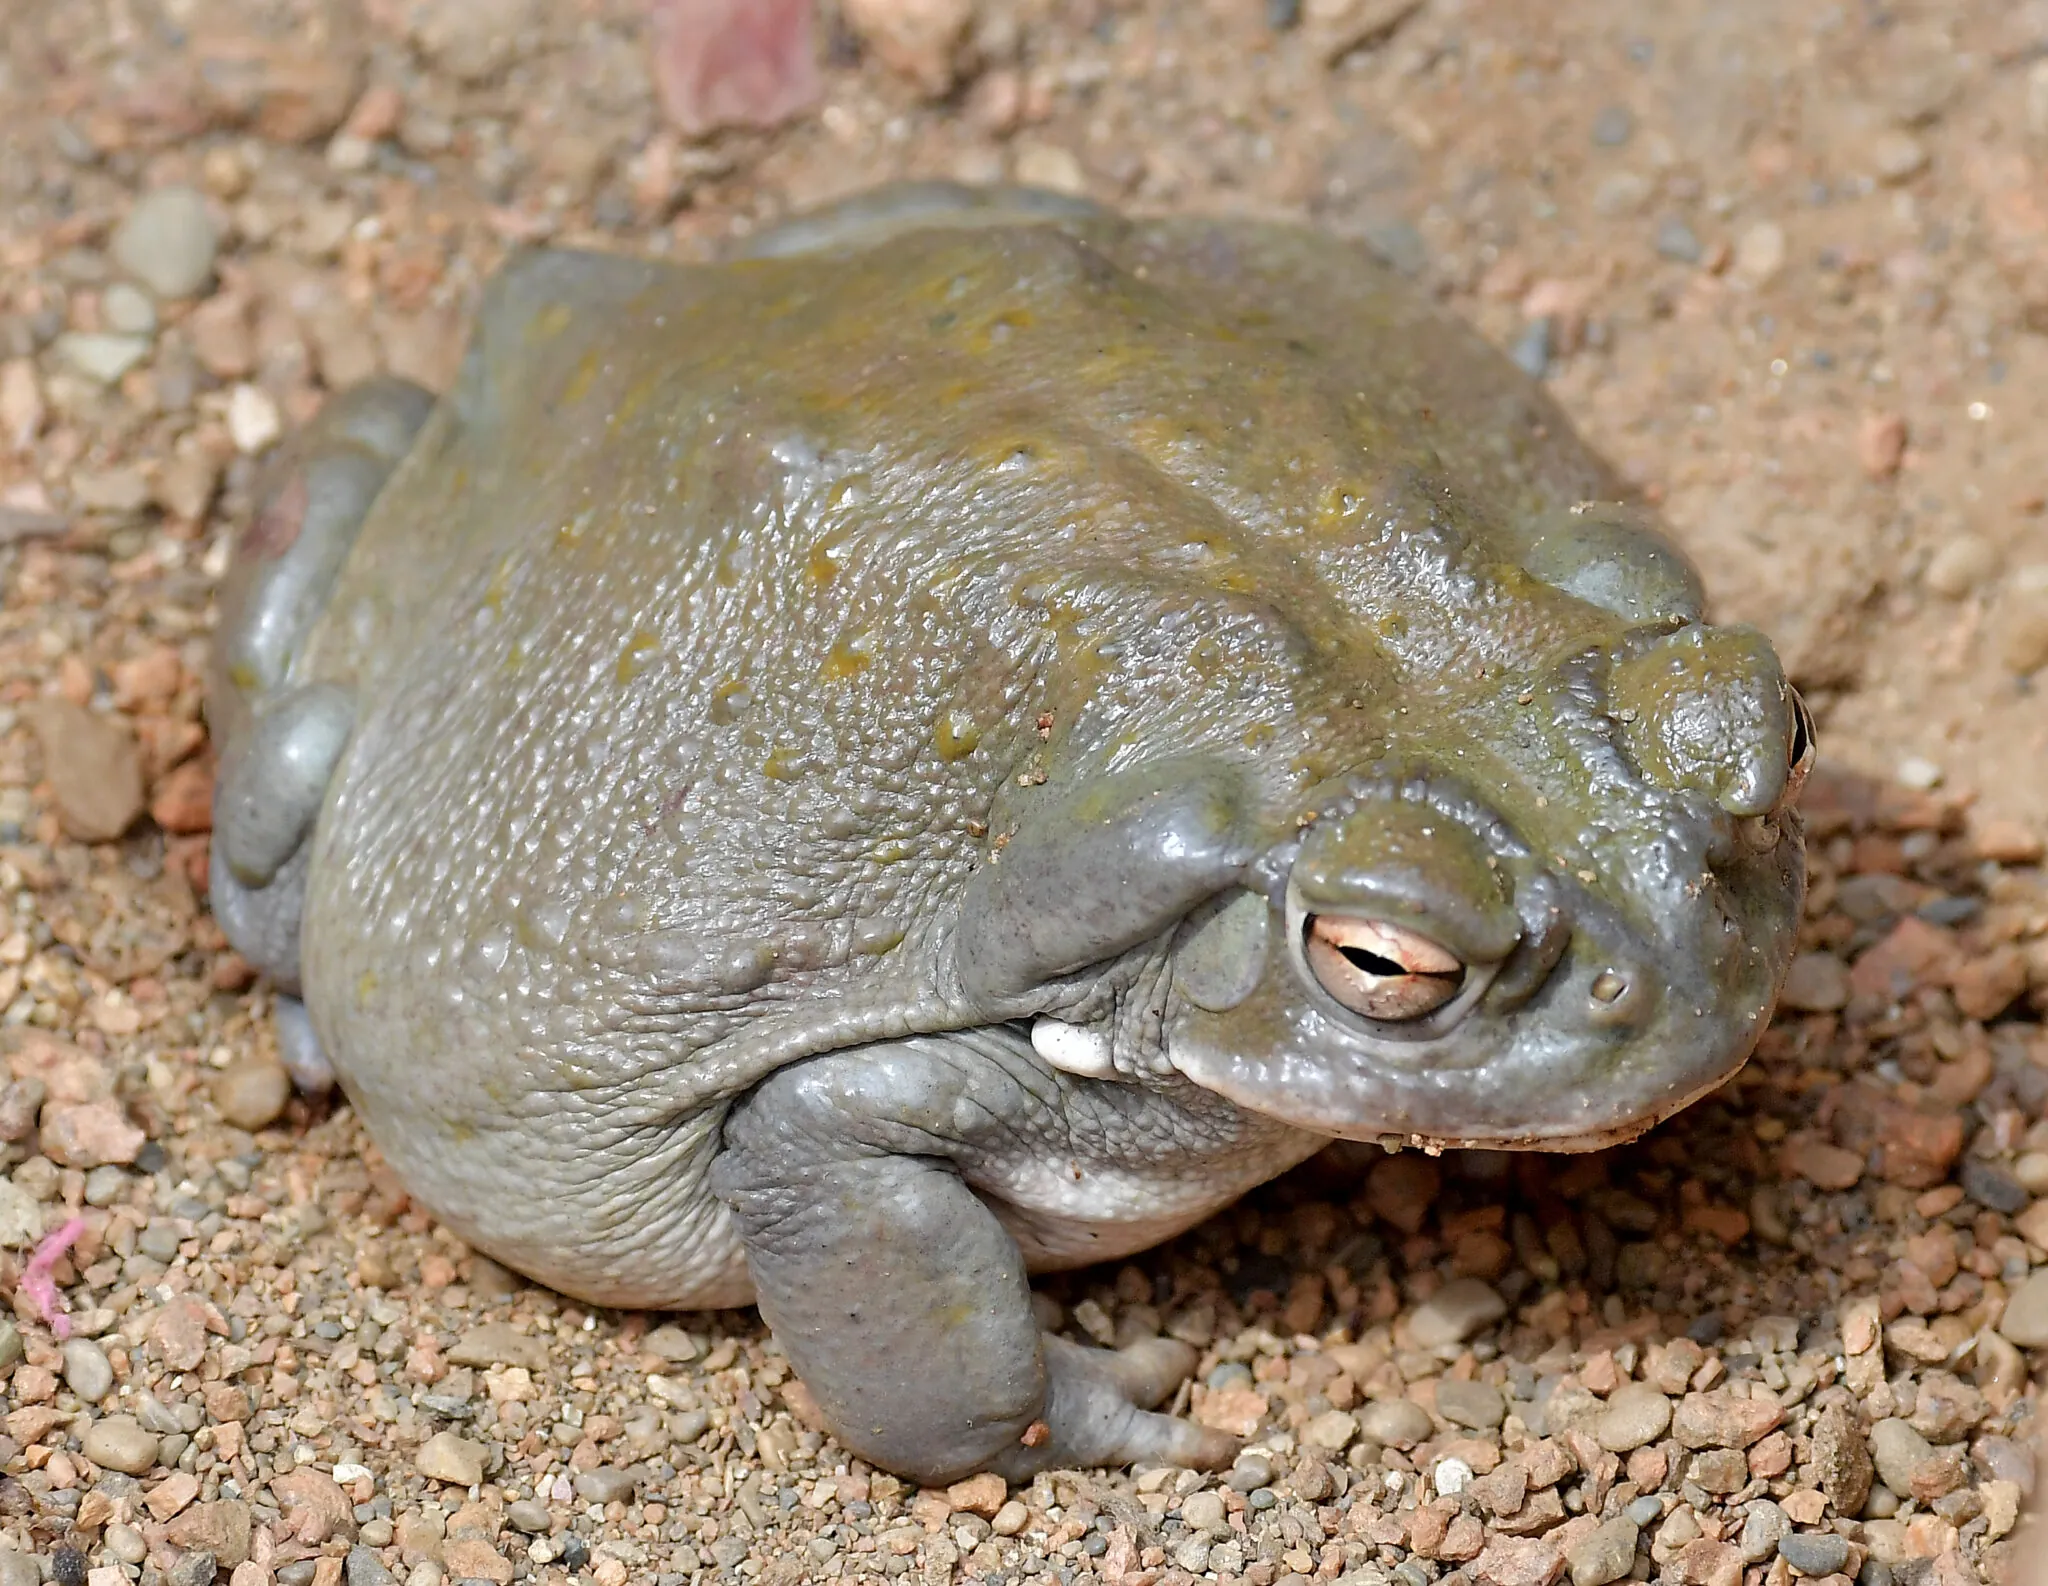 Colorado River Toad